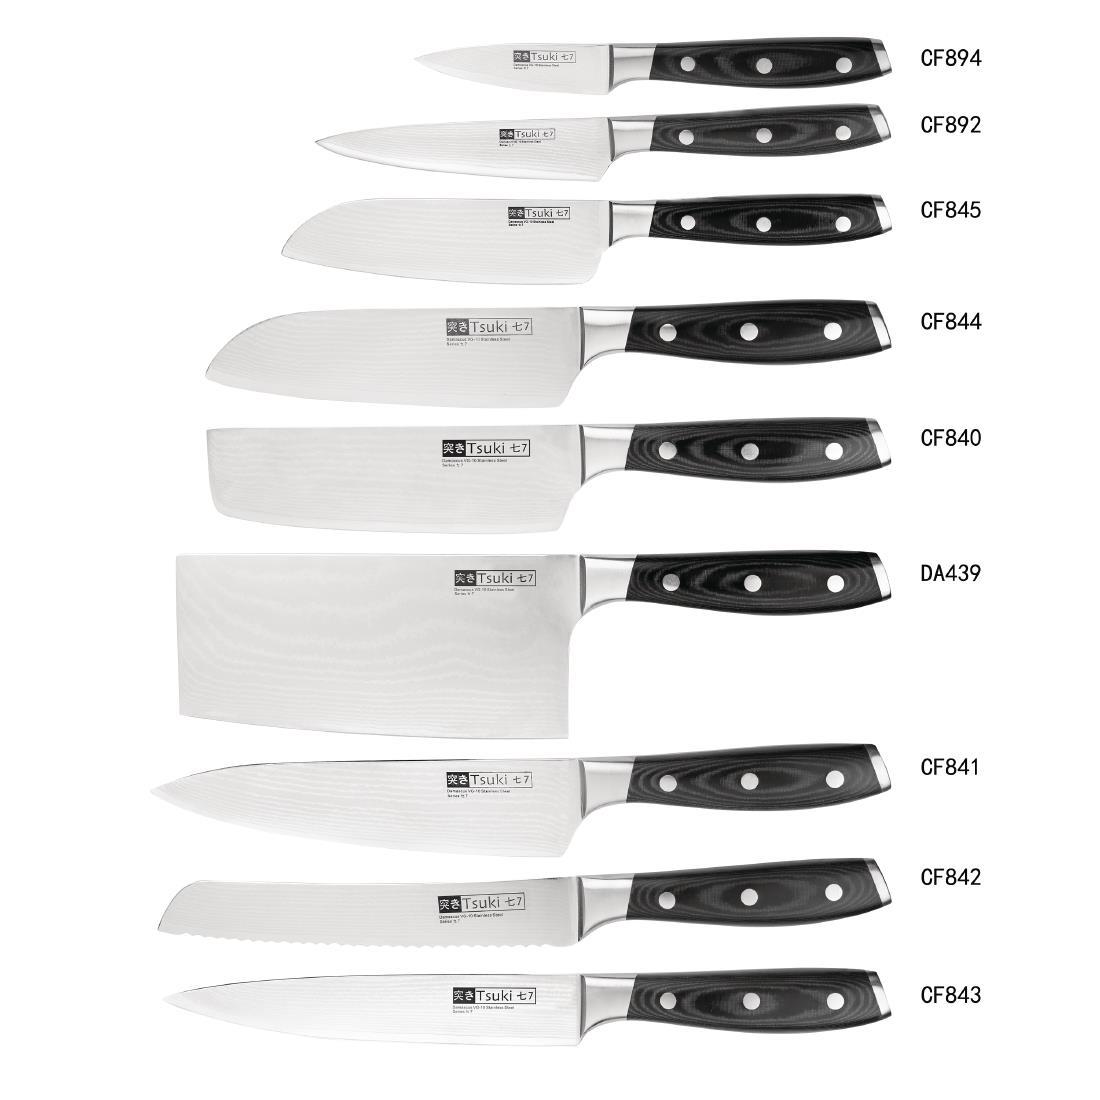 Vogue Tsuki Series 7 Santoku Knife 18cm - CF844  - 6